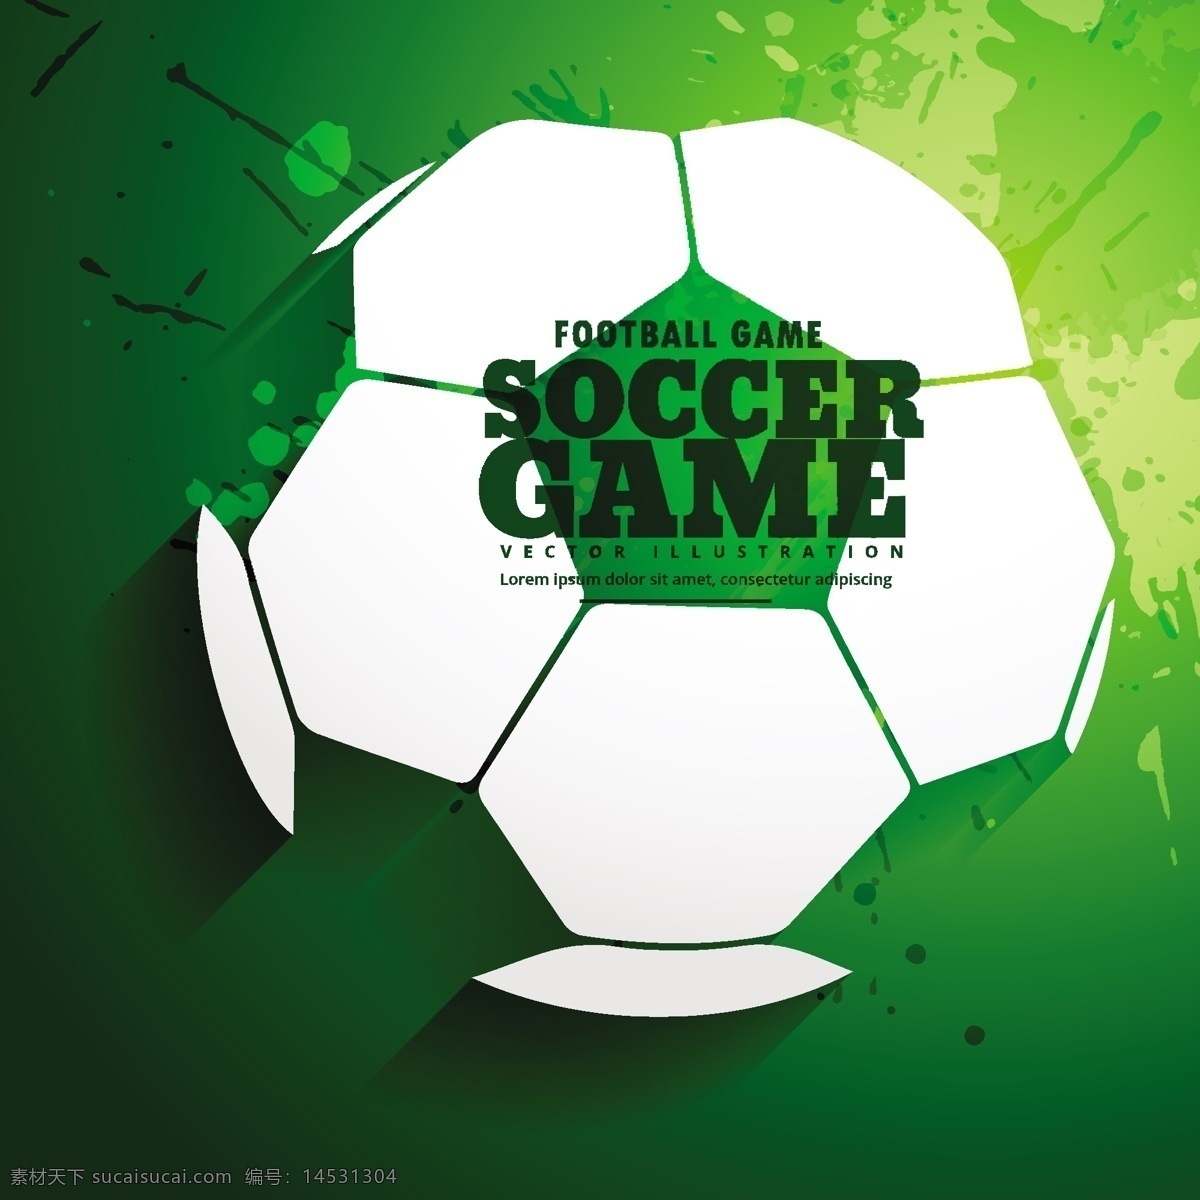 绿色 创意 世界杯 足球 元素 绿色背景 体育运动 体育 运动 健身 谁与争锋 球员 球迷 足球俱乐部 男足 女足 鼓足 有氧健身